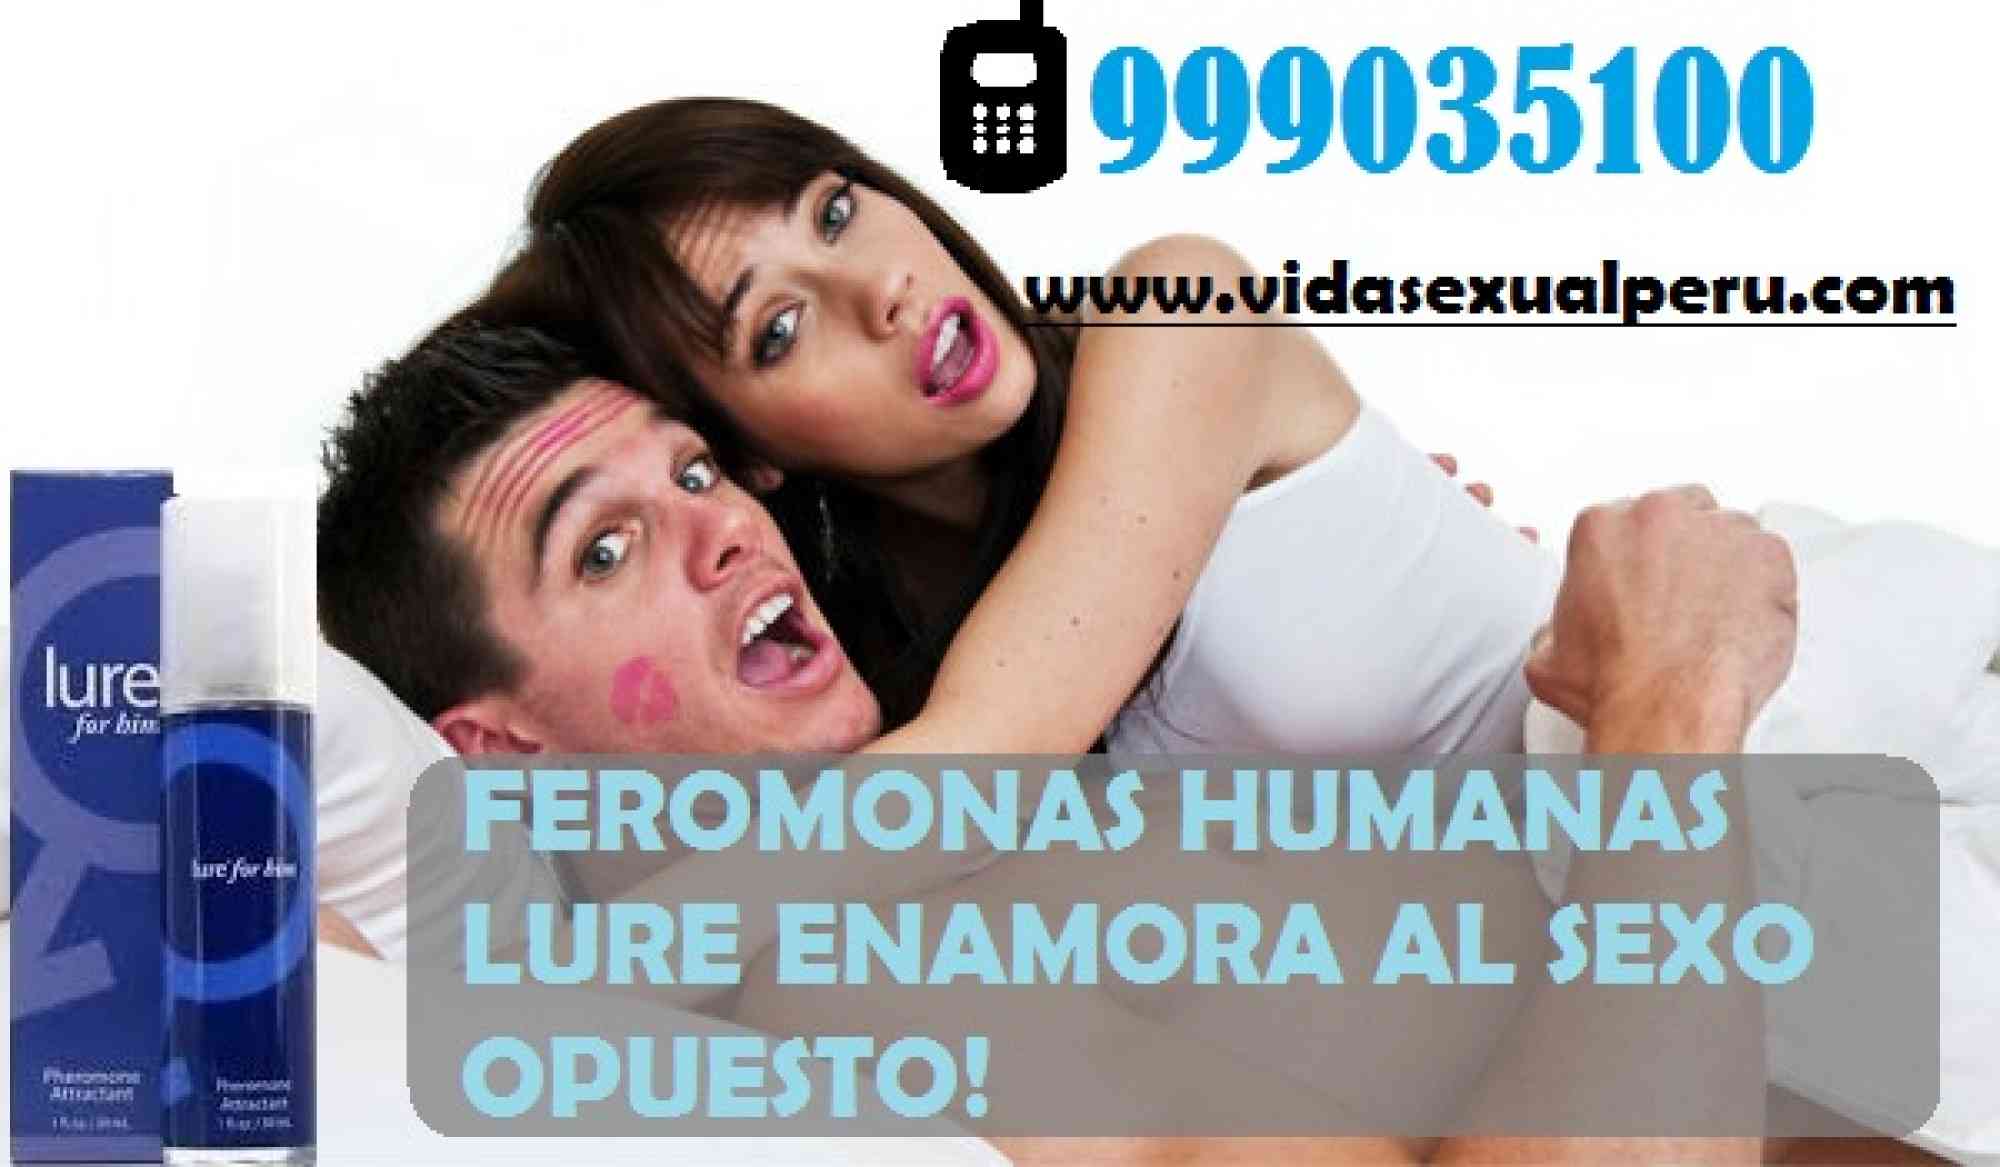 FEROMONAS PASCO CEL:999035100 en anuncio clasificado